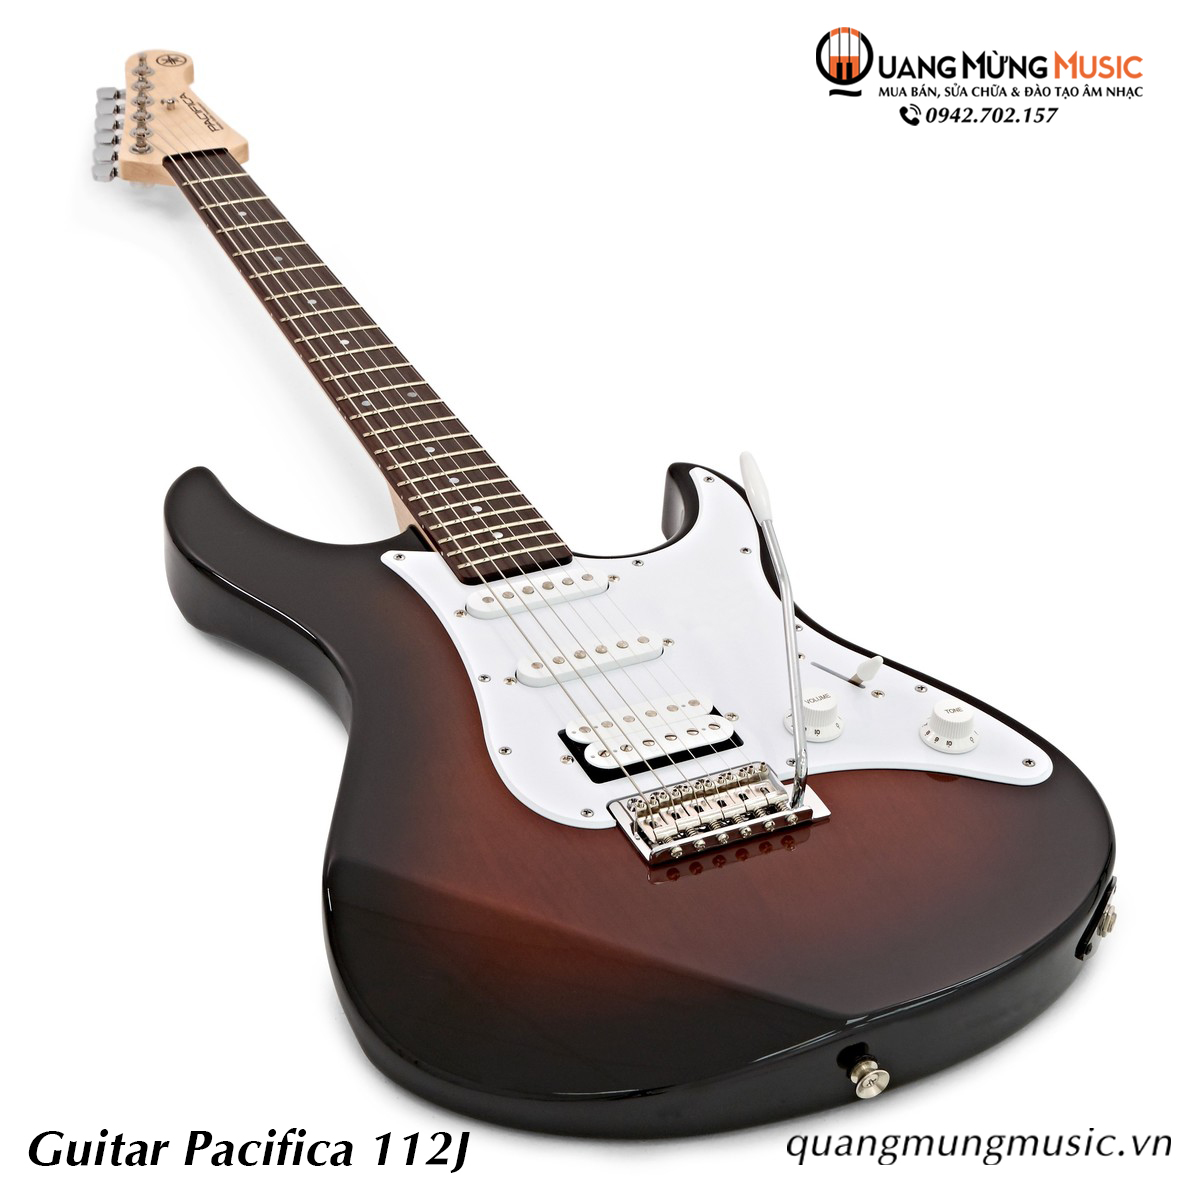 Guitar Điện Yamaha Pacifica 112J4